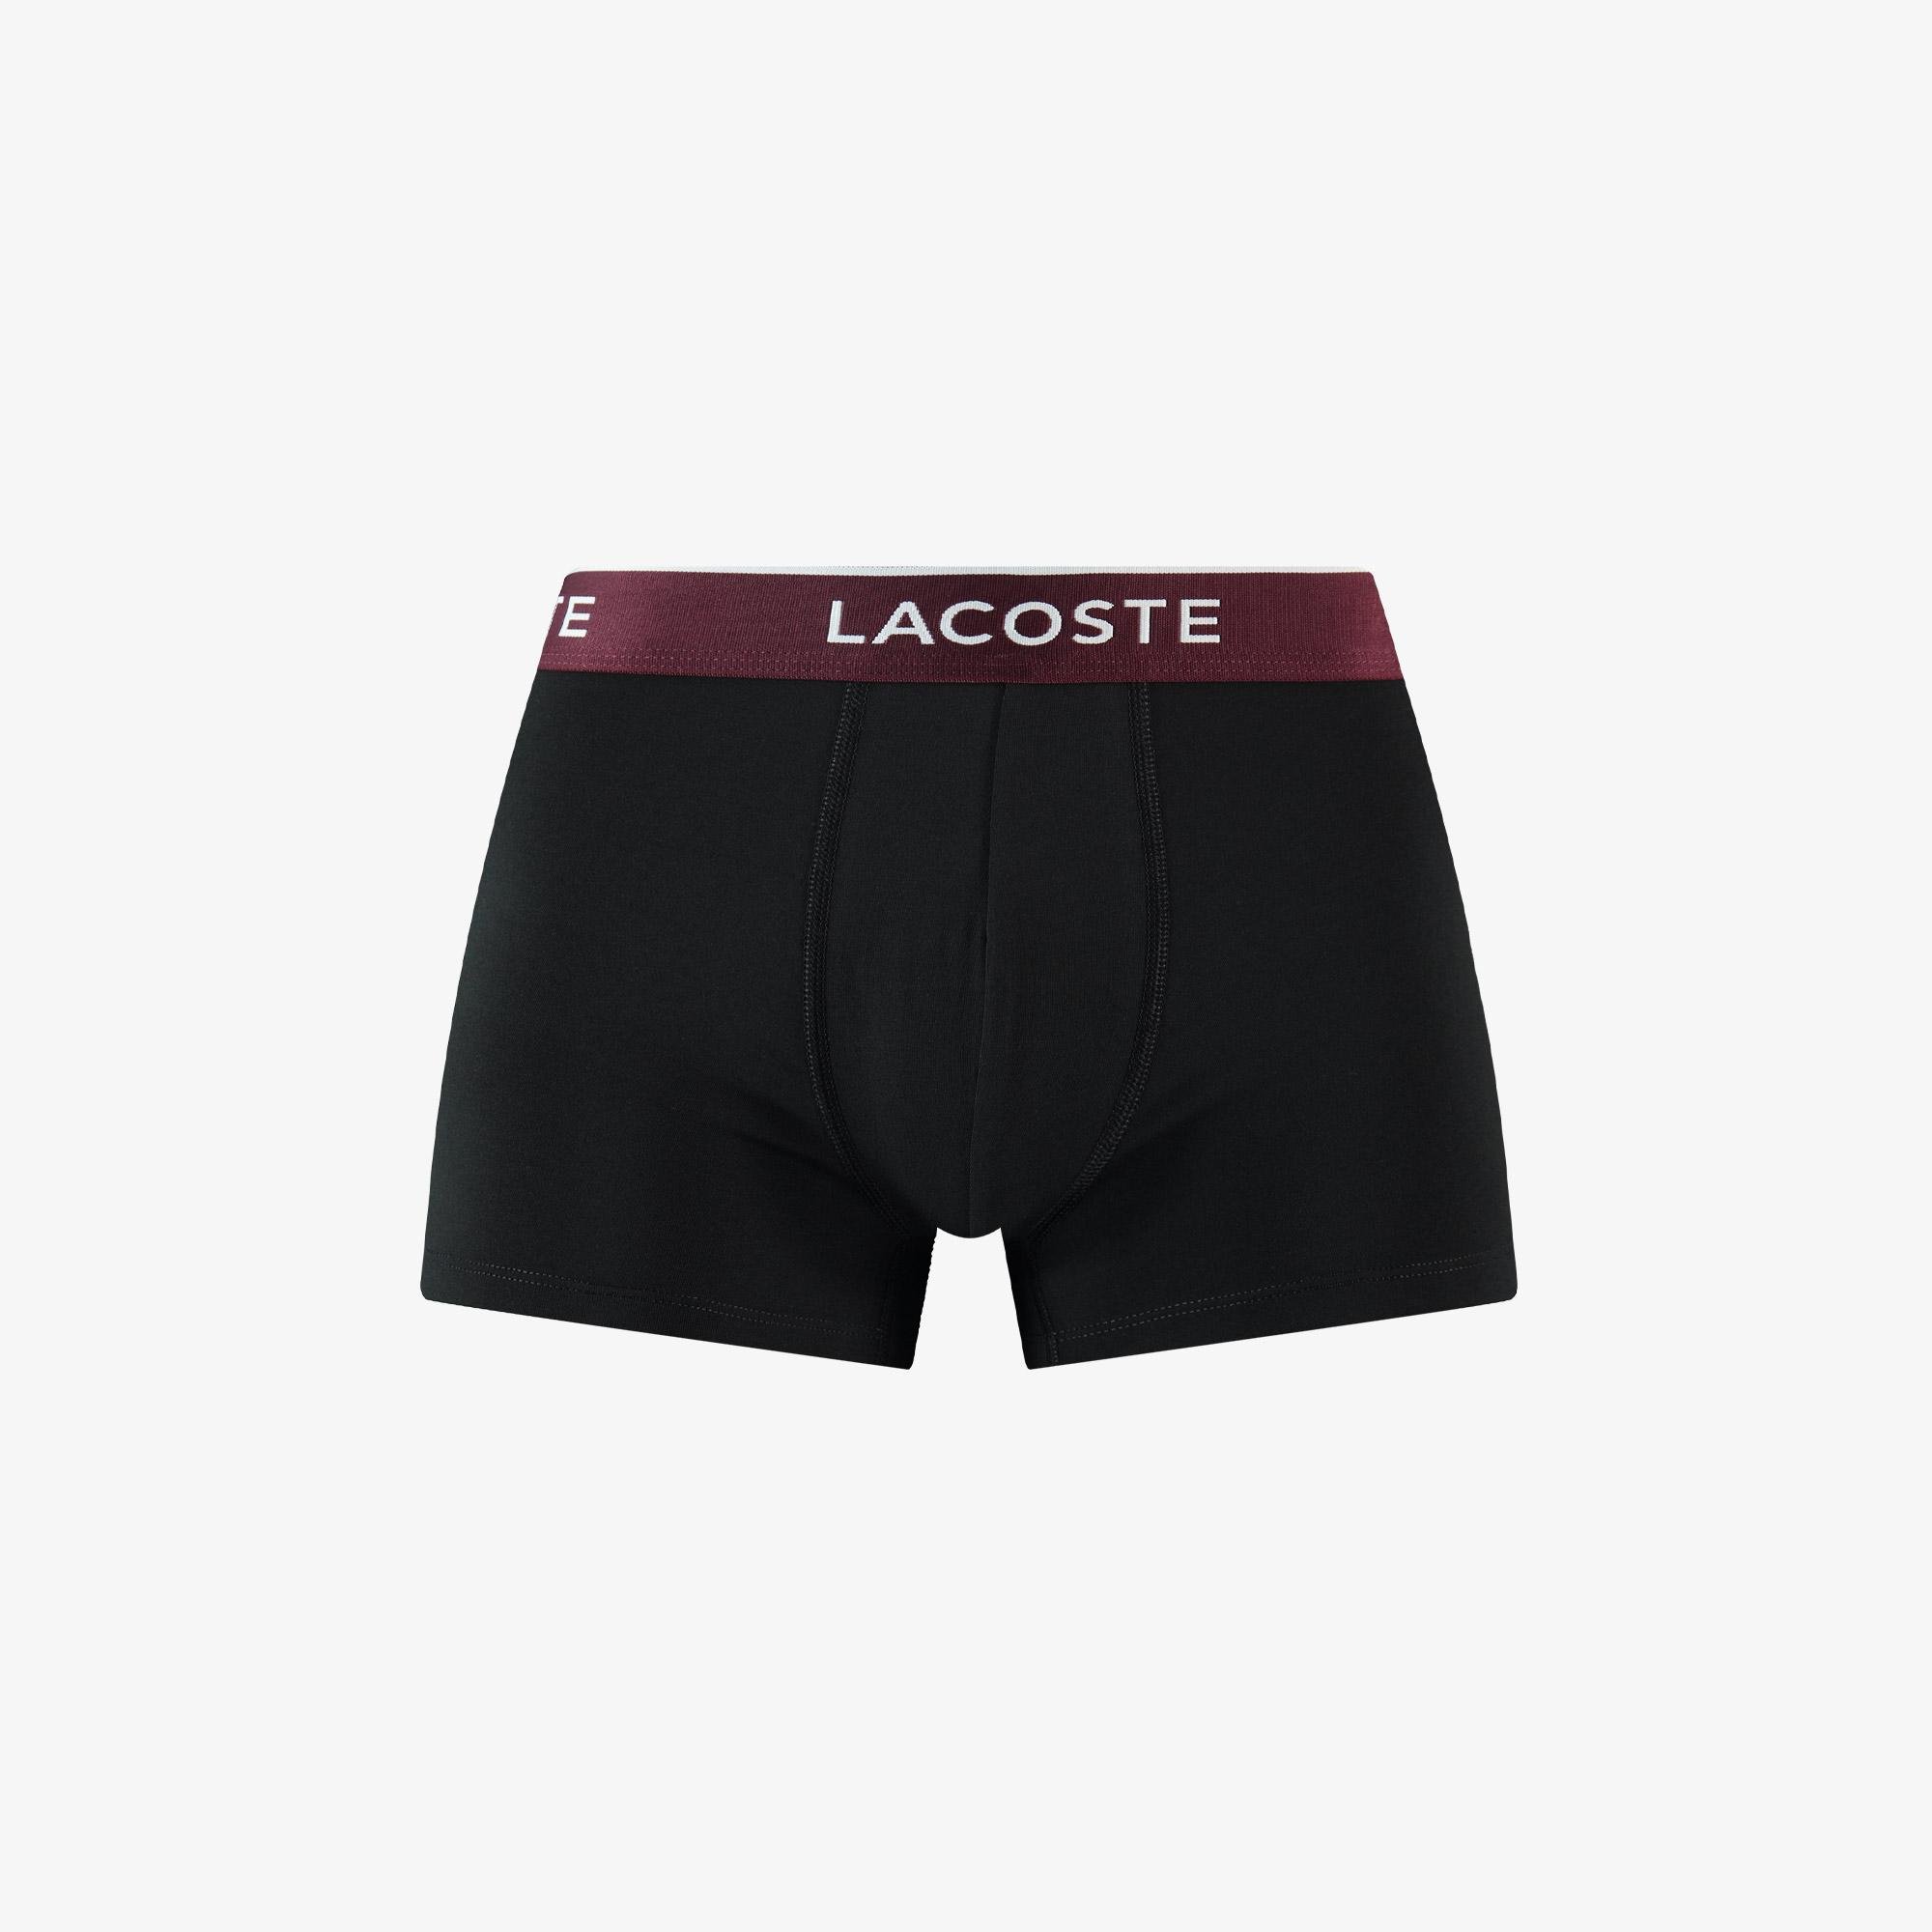 Lacoste men's boxer shorts, set of 9